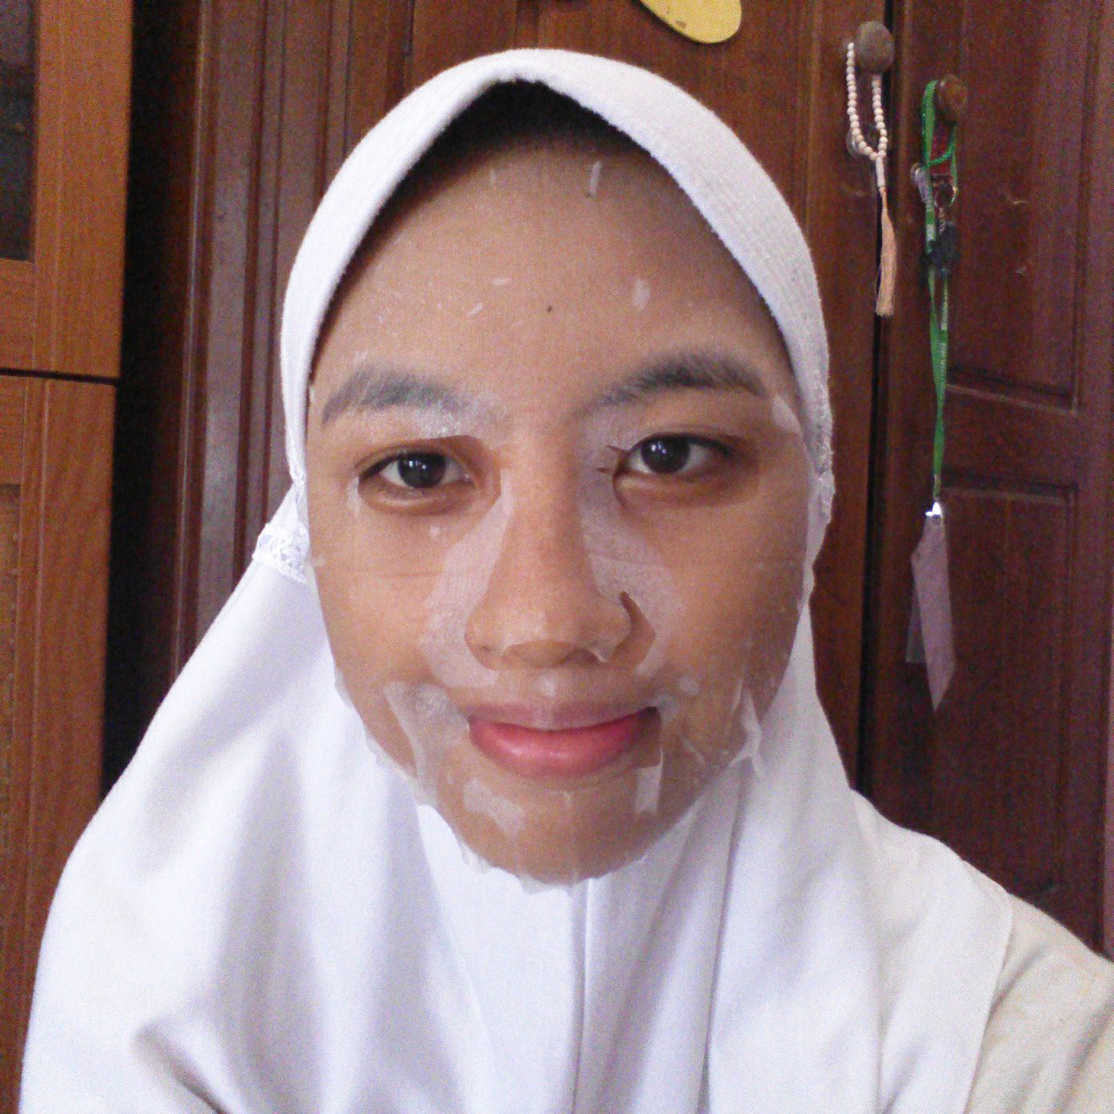 Malay facial